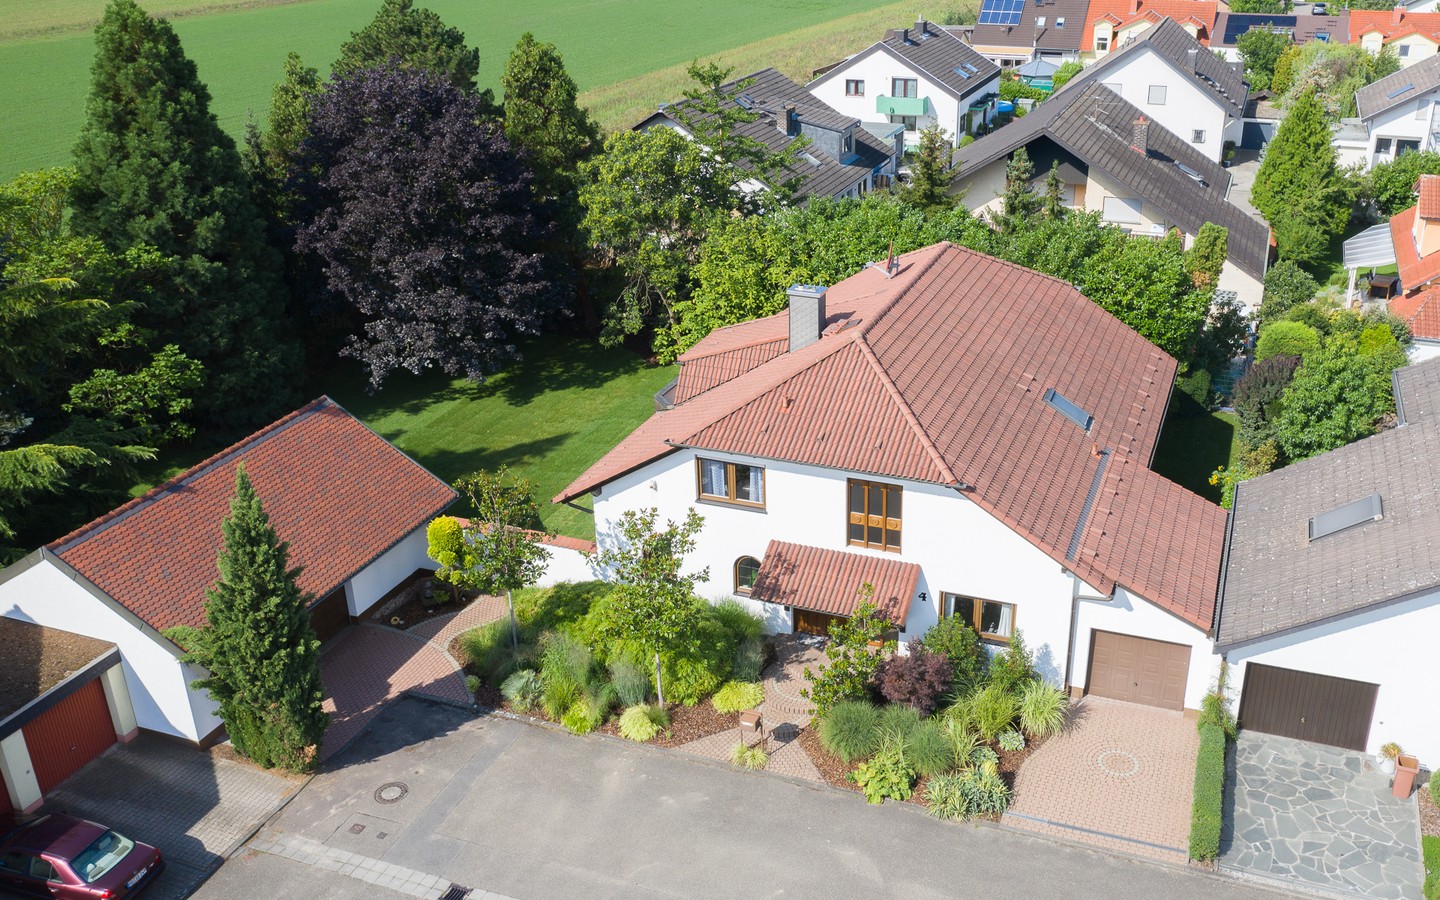 Luftaufnahme - Seltene Gelegenheit: 
Sehr großzügiges Einfamilienhaus mit parkähnlichem Garten in Feldrandlage